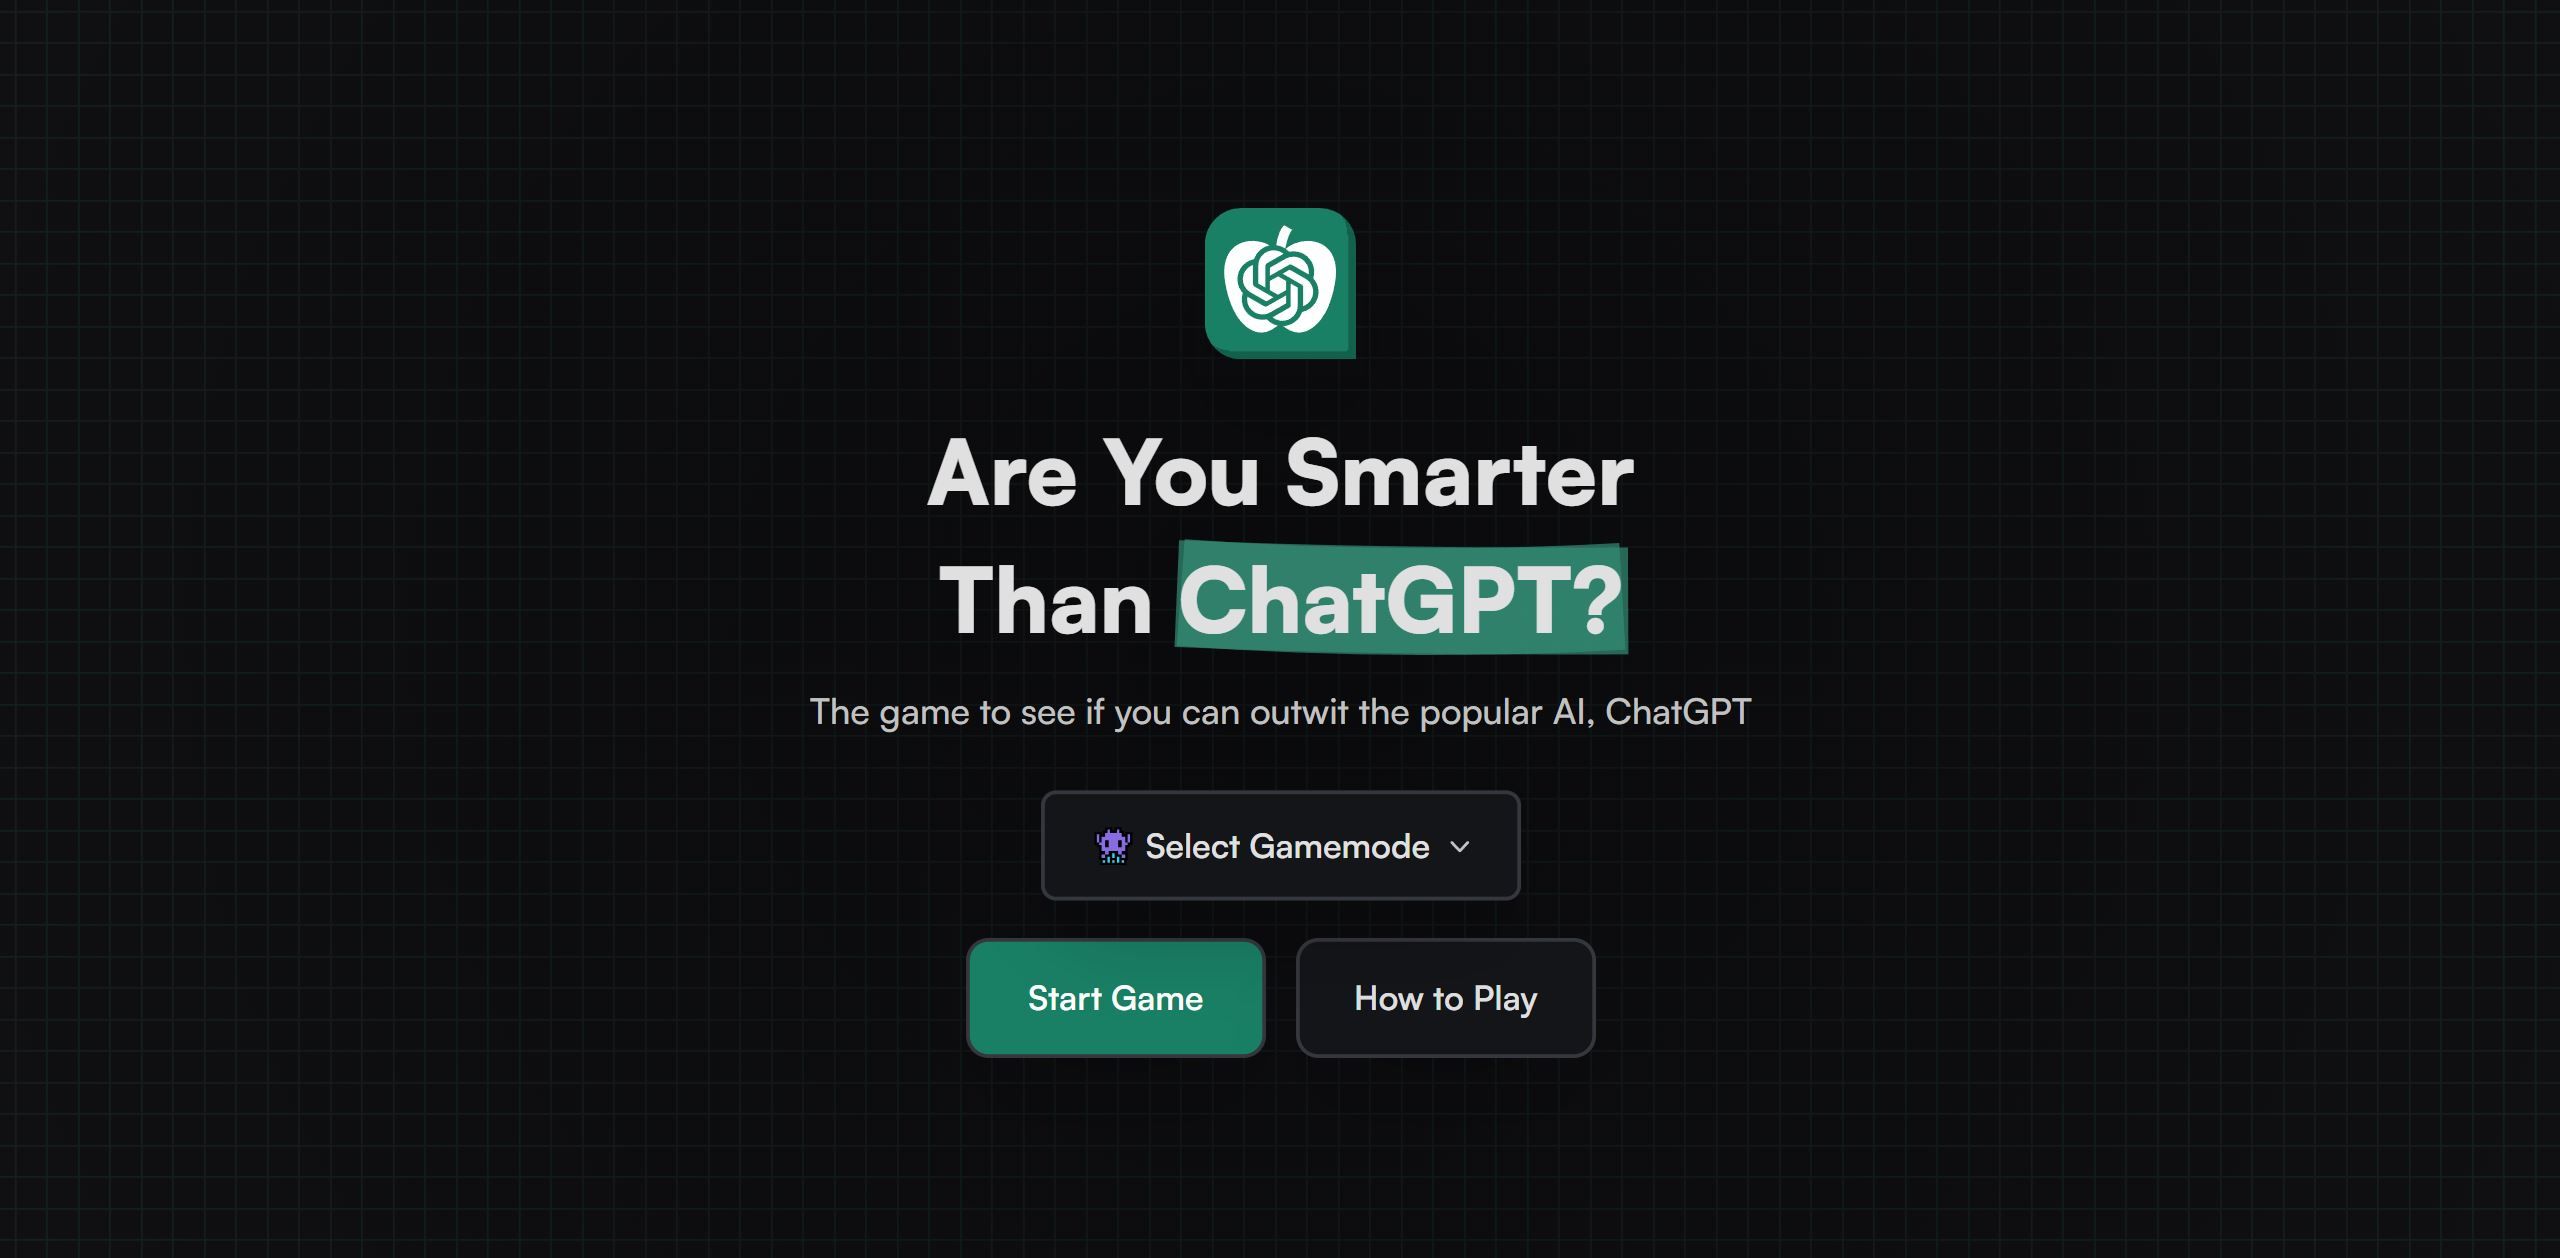 你比 ChatGPT 更聰明嗎